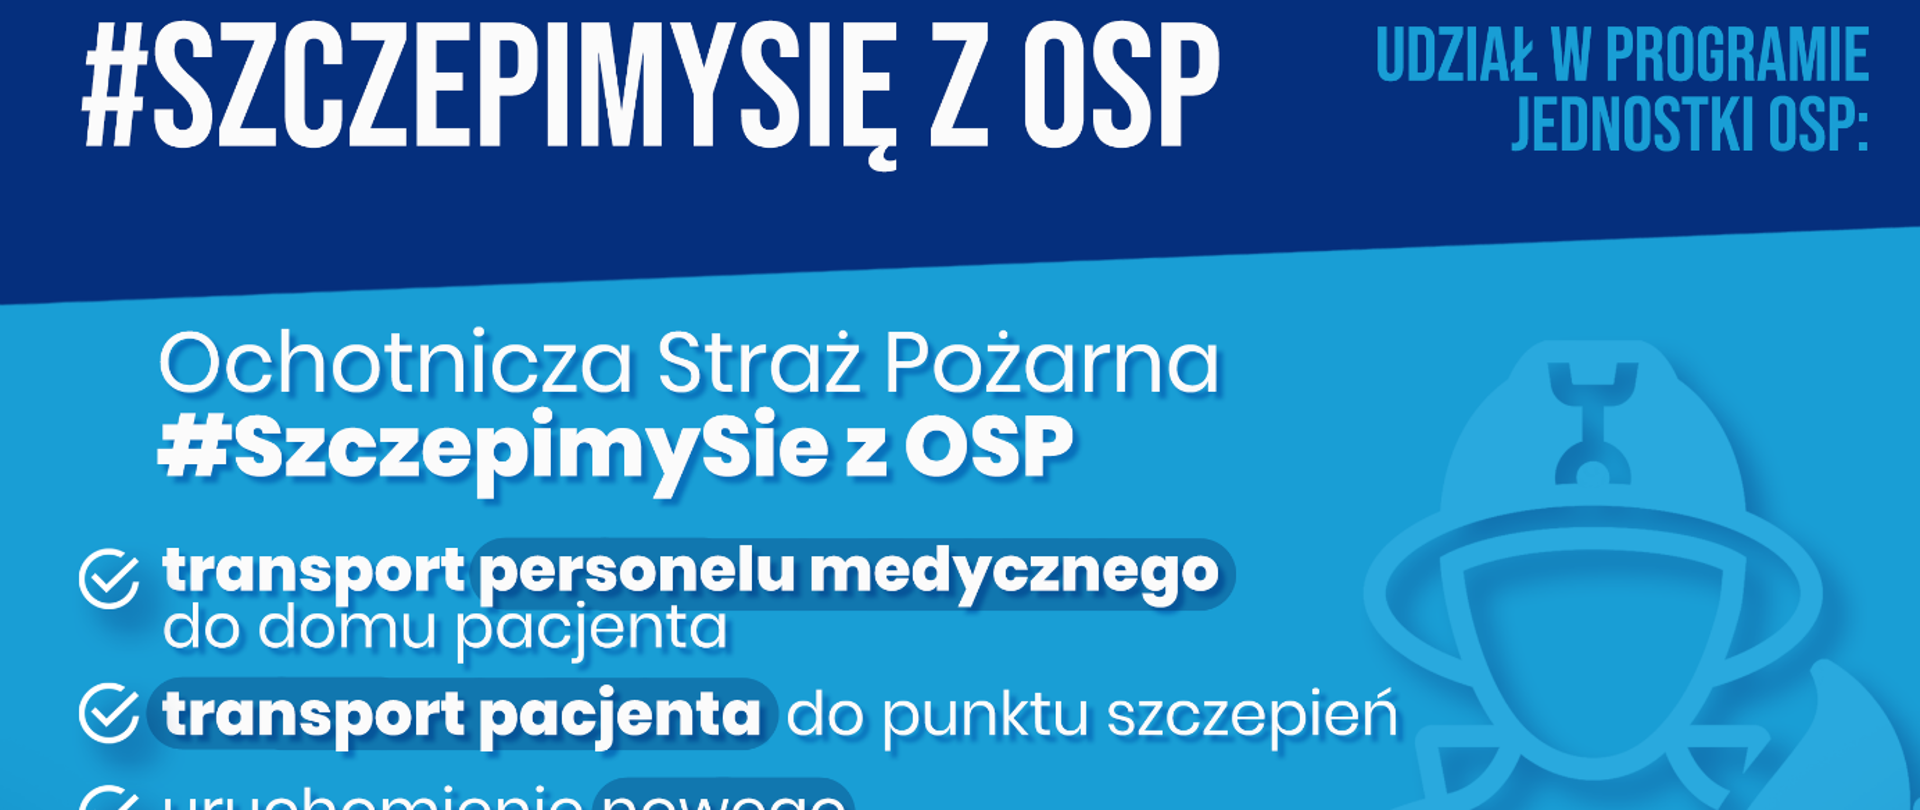 Zdjęcie przedstawia plakat konkursu #SzczepimySię z OSP